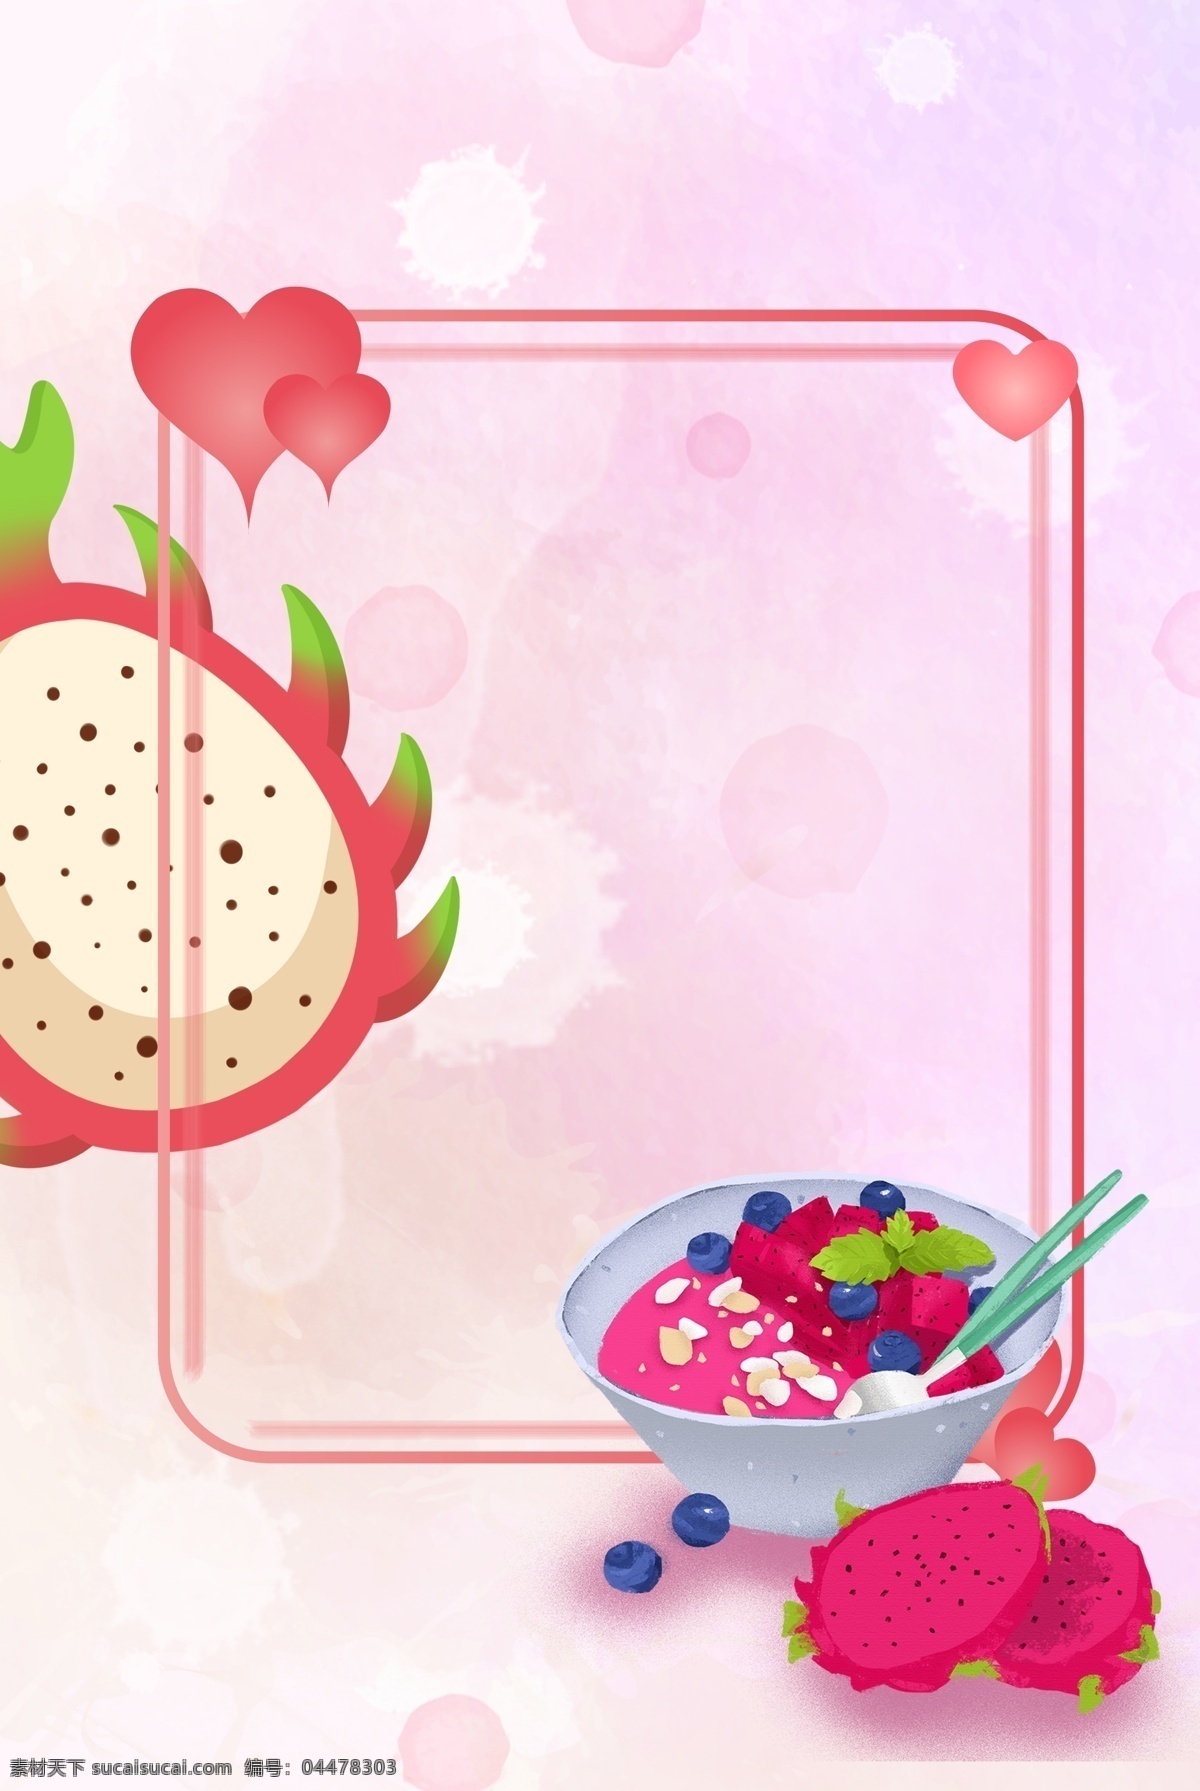 火龙果 唯美 背景 健康 卡通 手绘 插画 新鲜 水果 装饰 食品 食材 食物